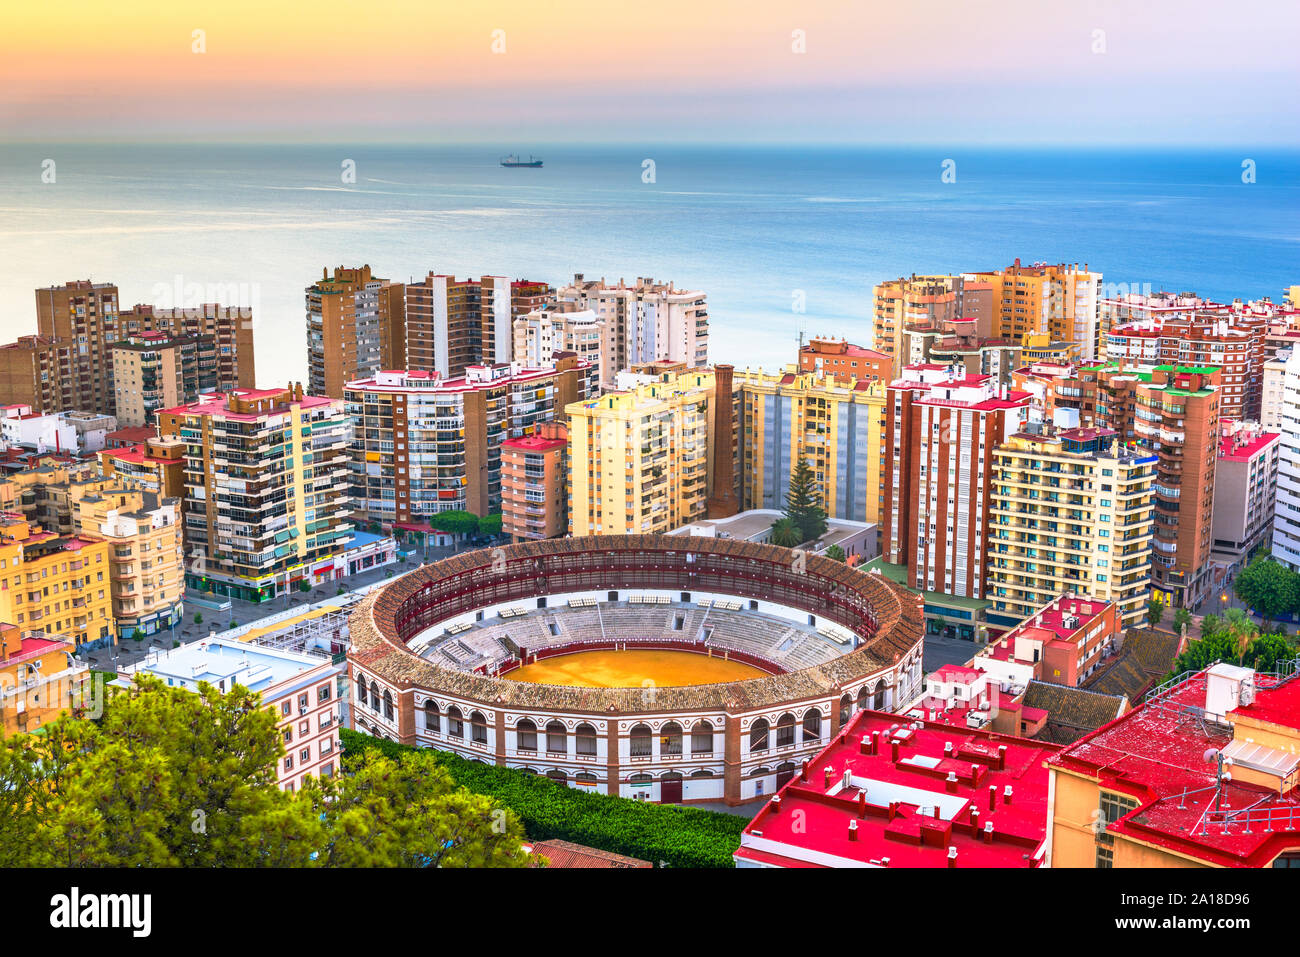 Malaga, Espagne dawn skyline vers la mer Méditerranée. Banque D'Images